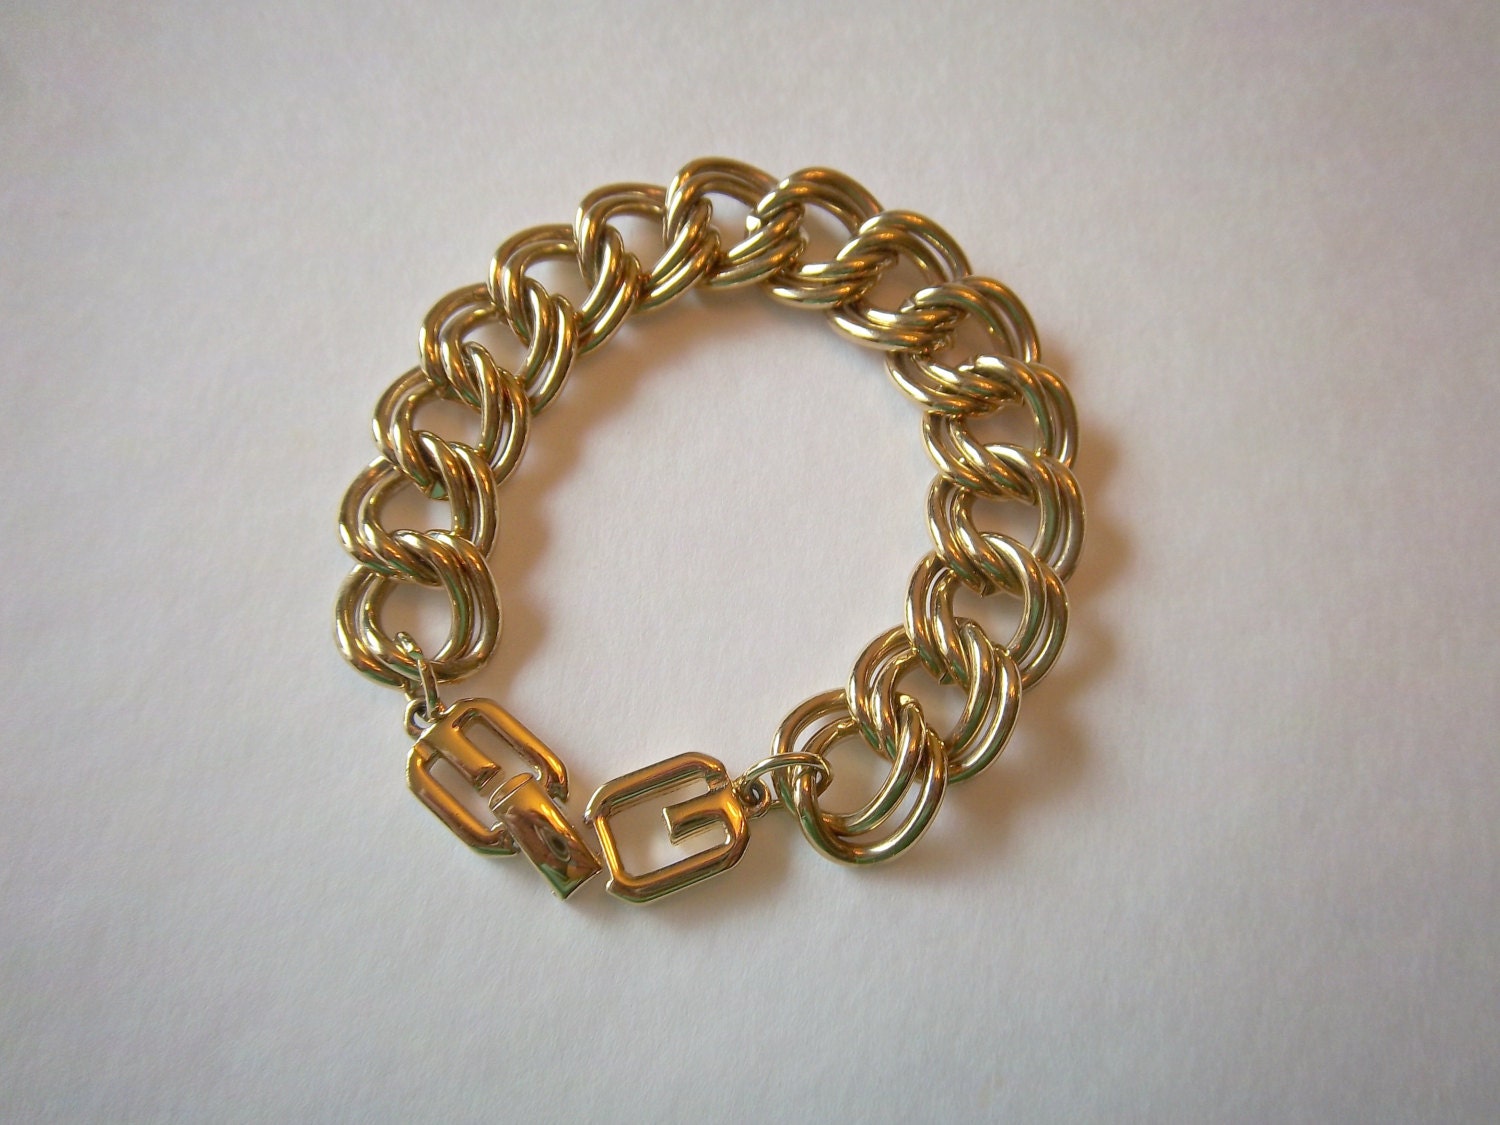 Vintage Givenchy Bracelet Gold Tone Chunky Links by StateofVintage